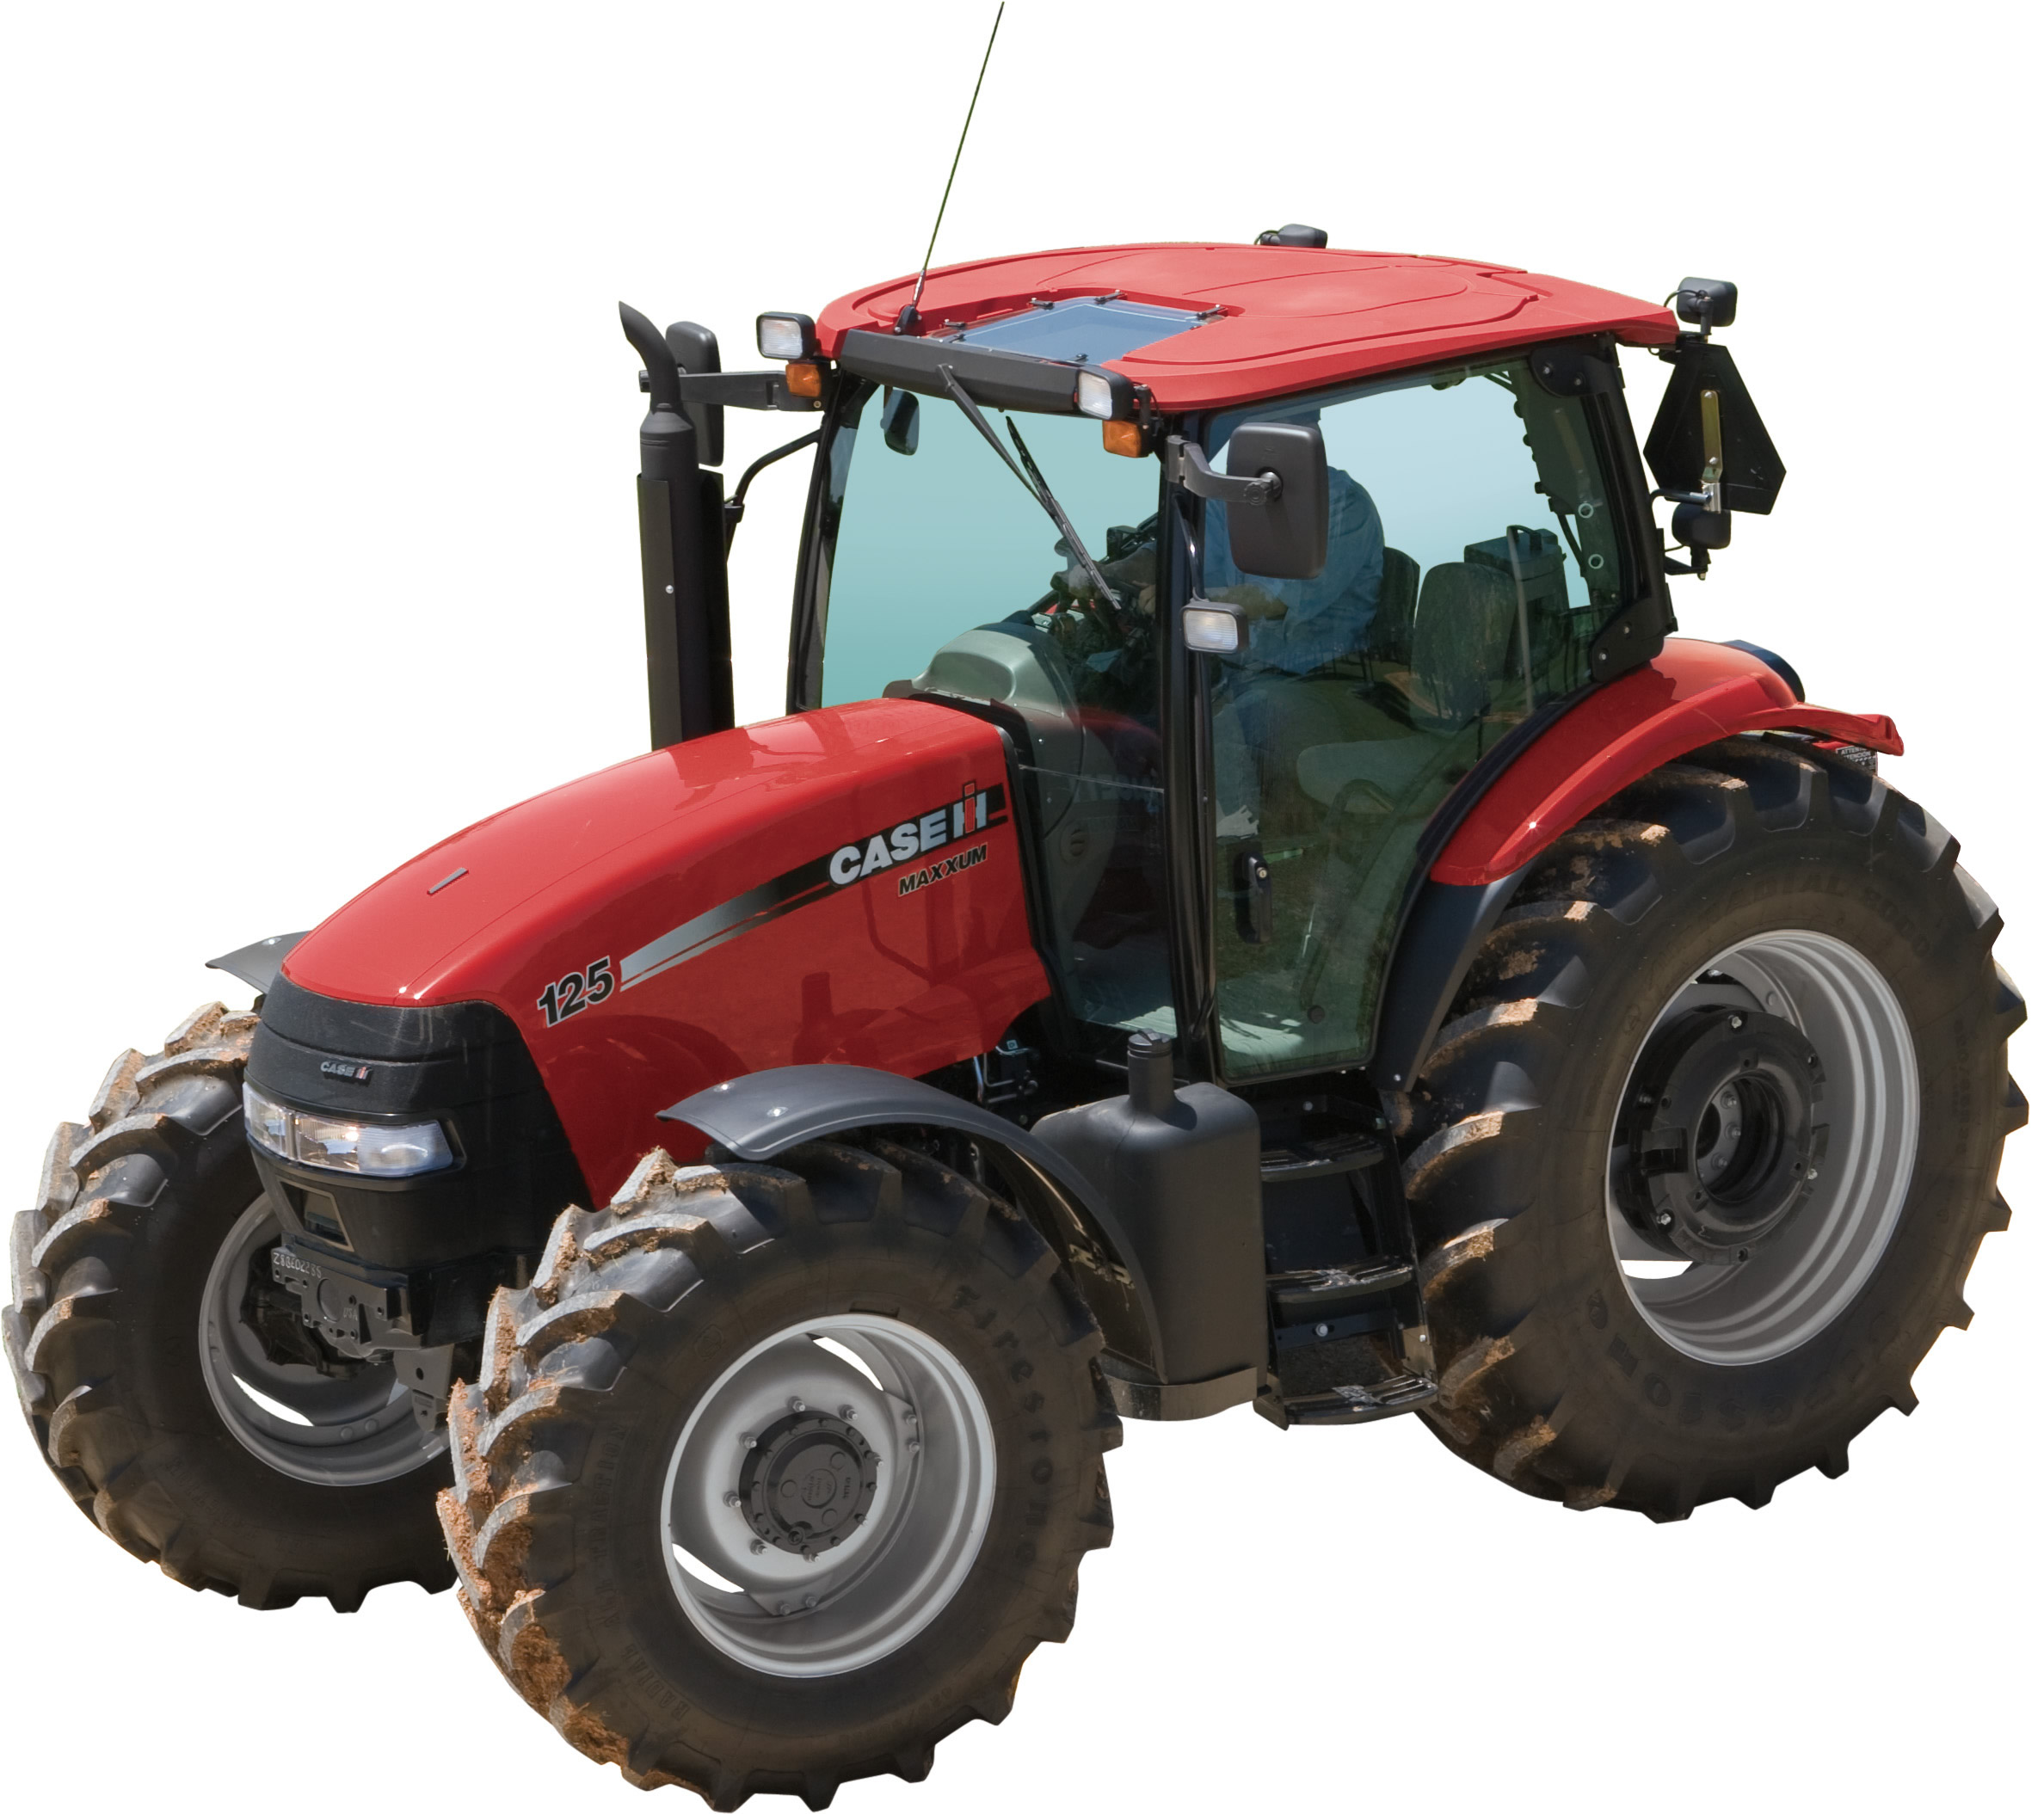 Hochwertige Tuning Fil Case Tractor IRON 110  110hp